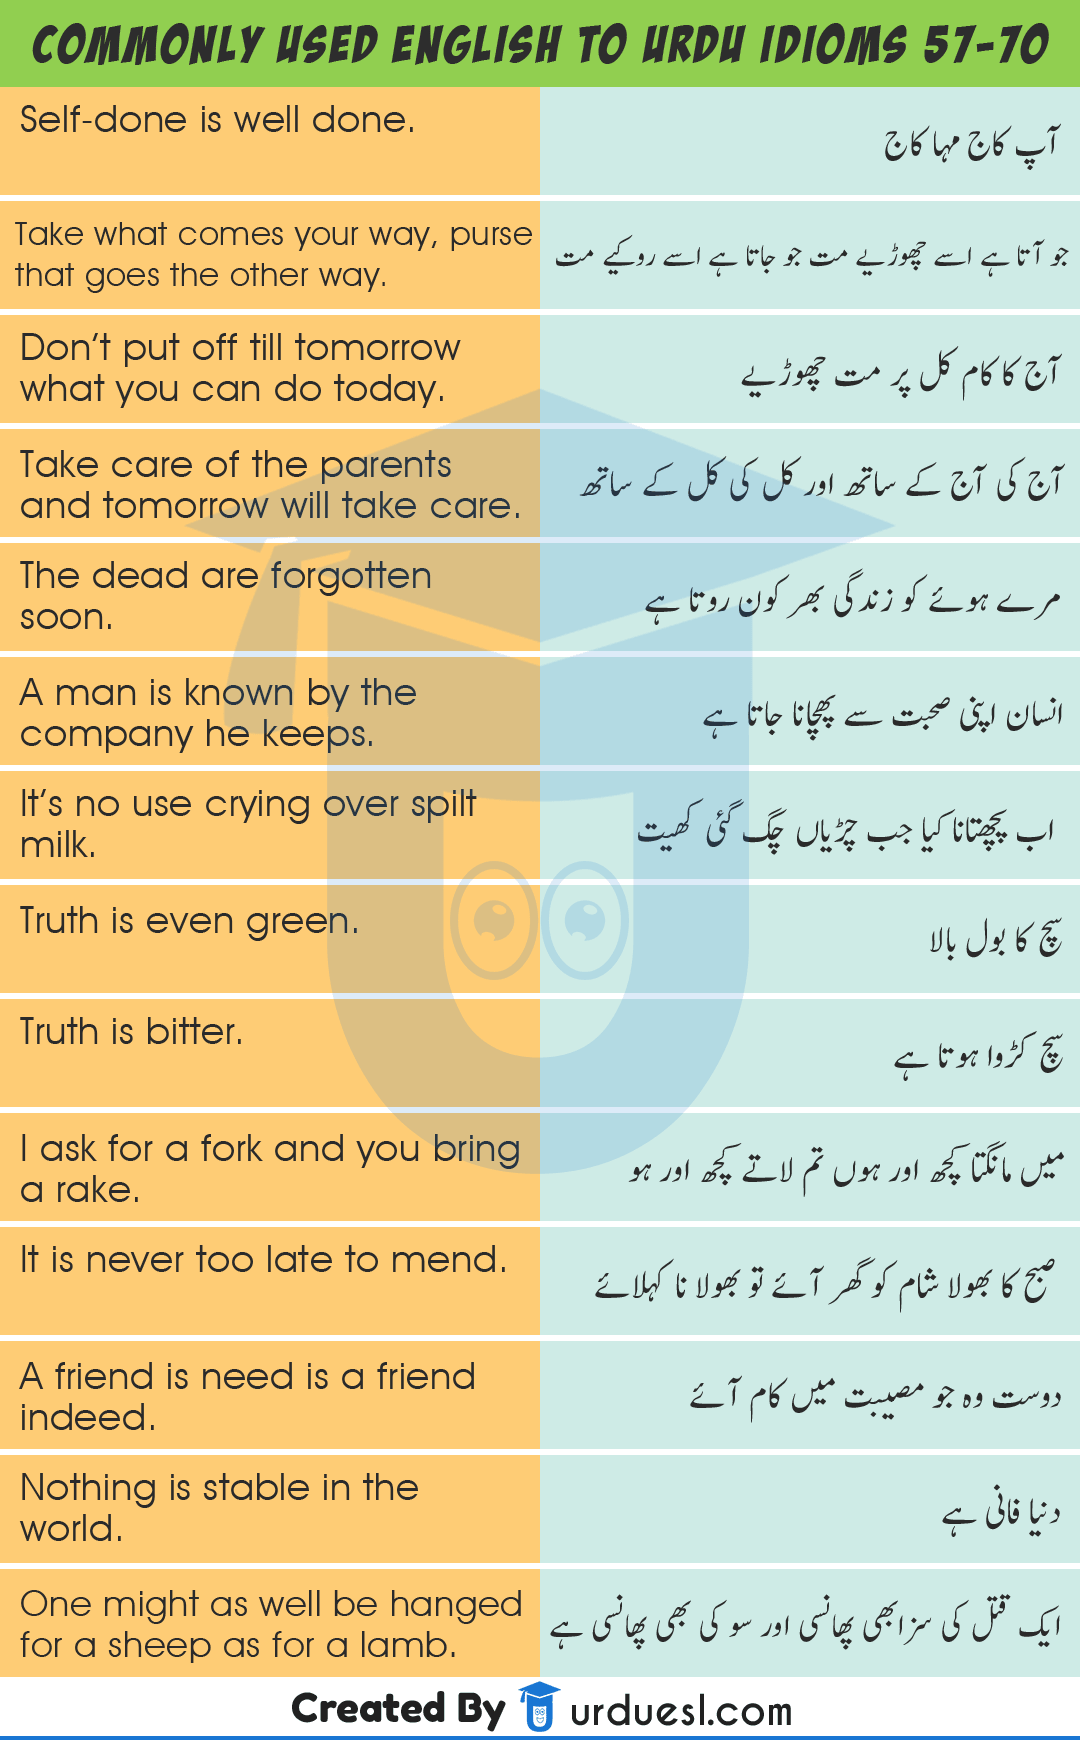 speech meaning in urdu